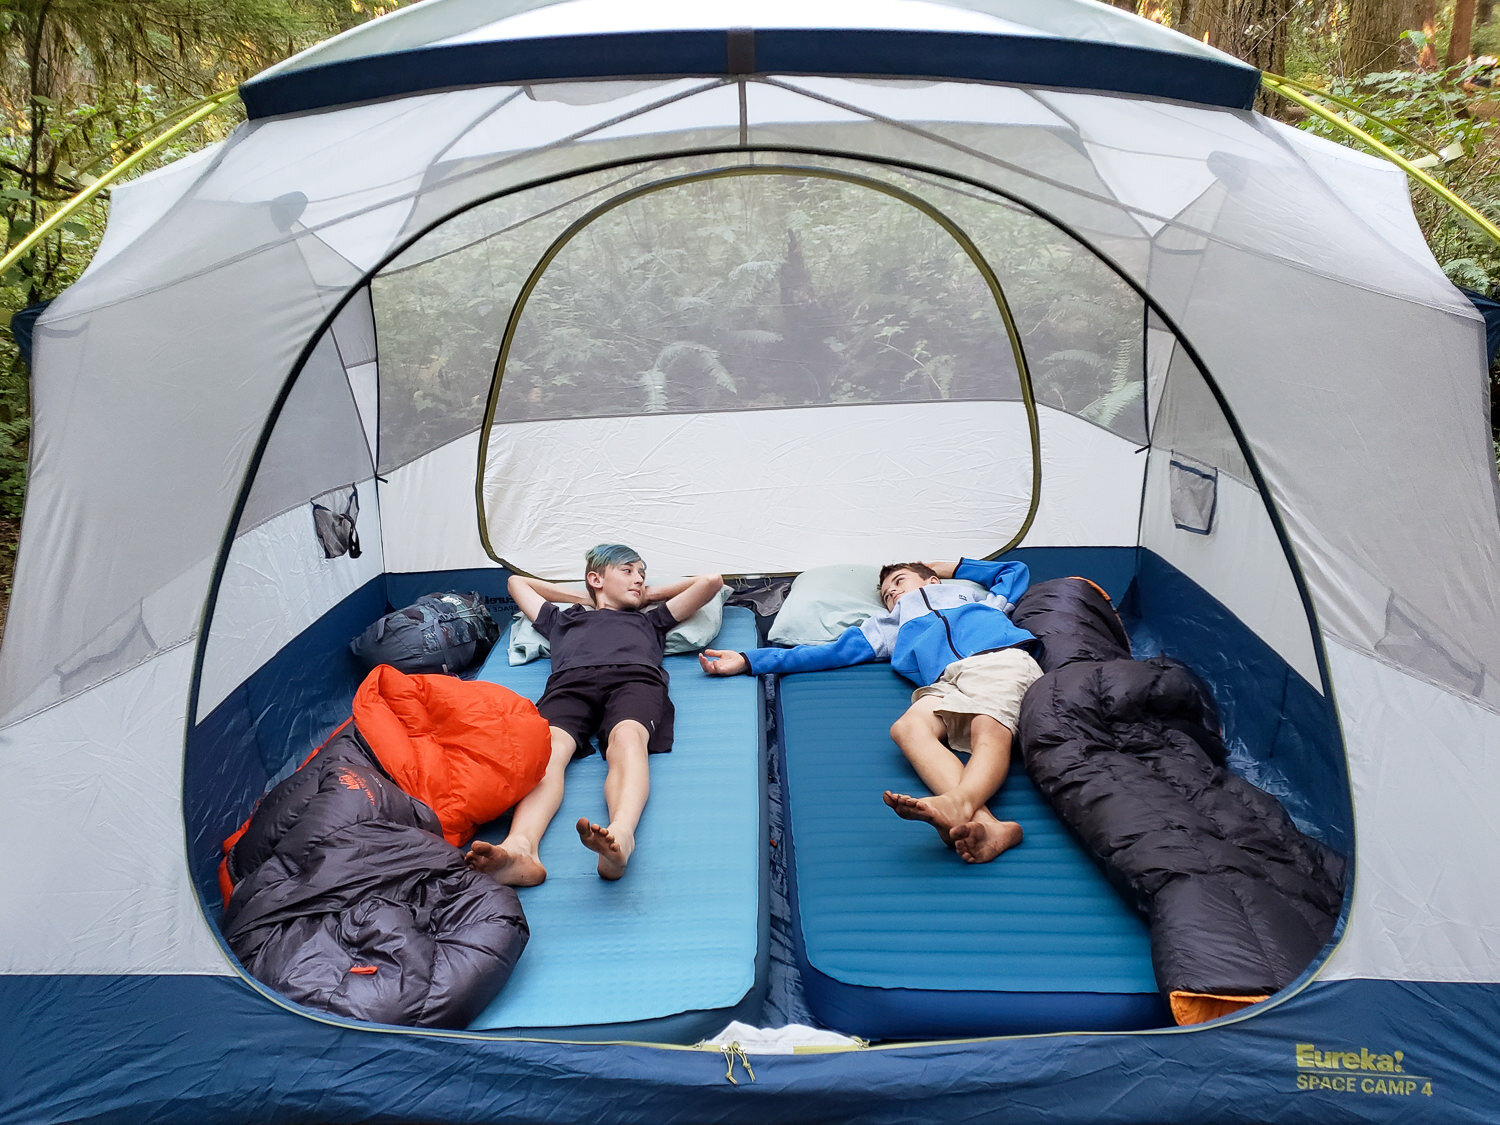 best camping sleeping mattress